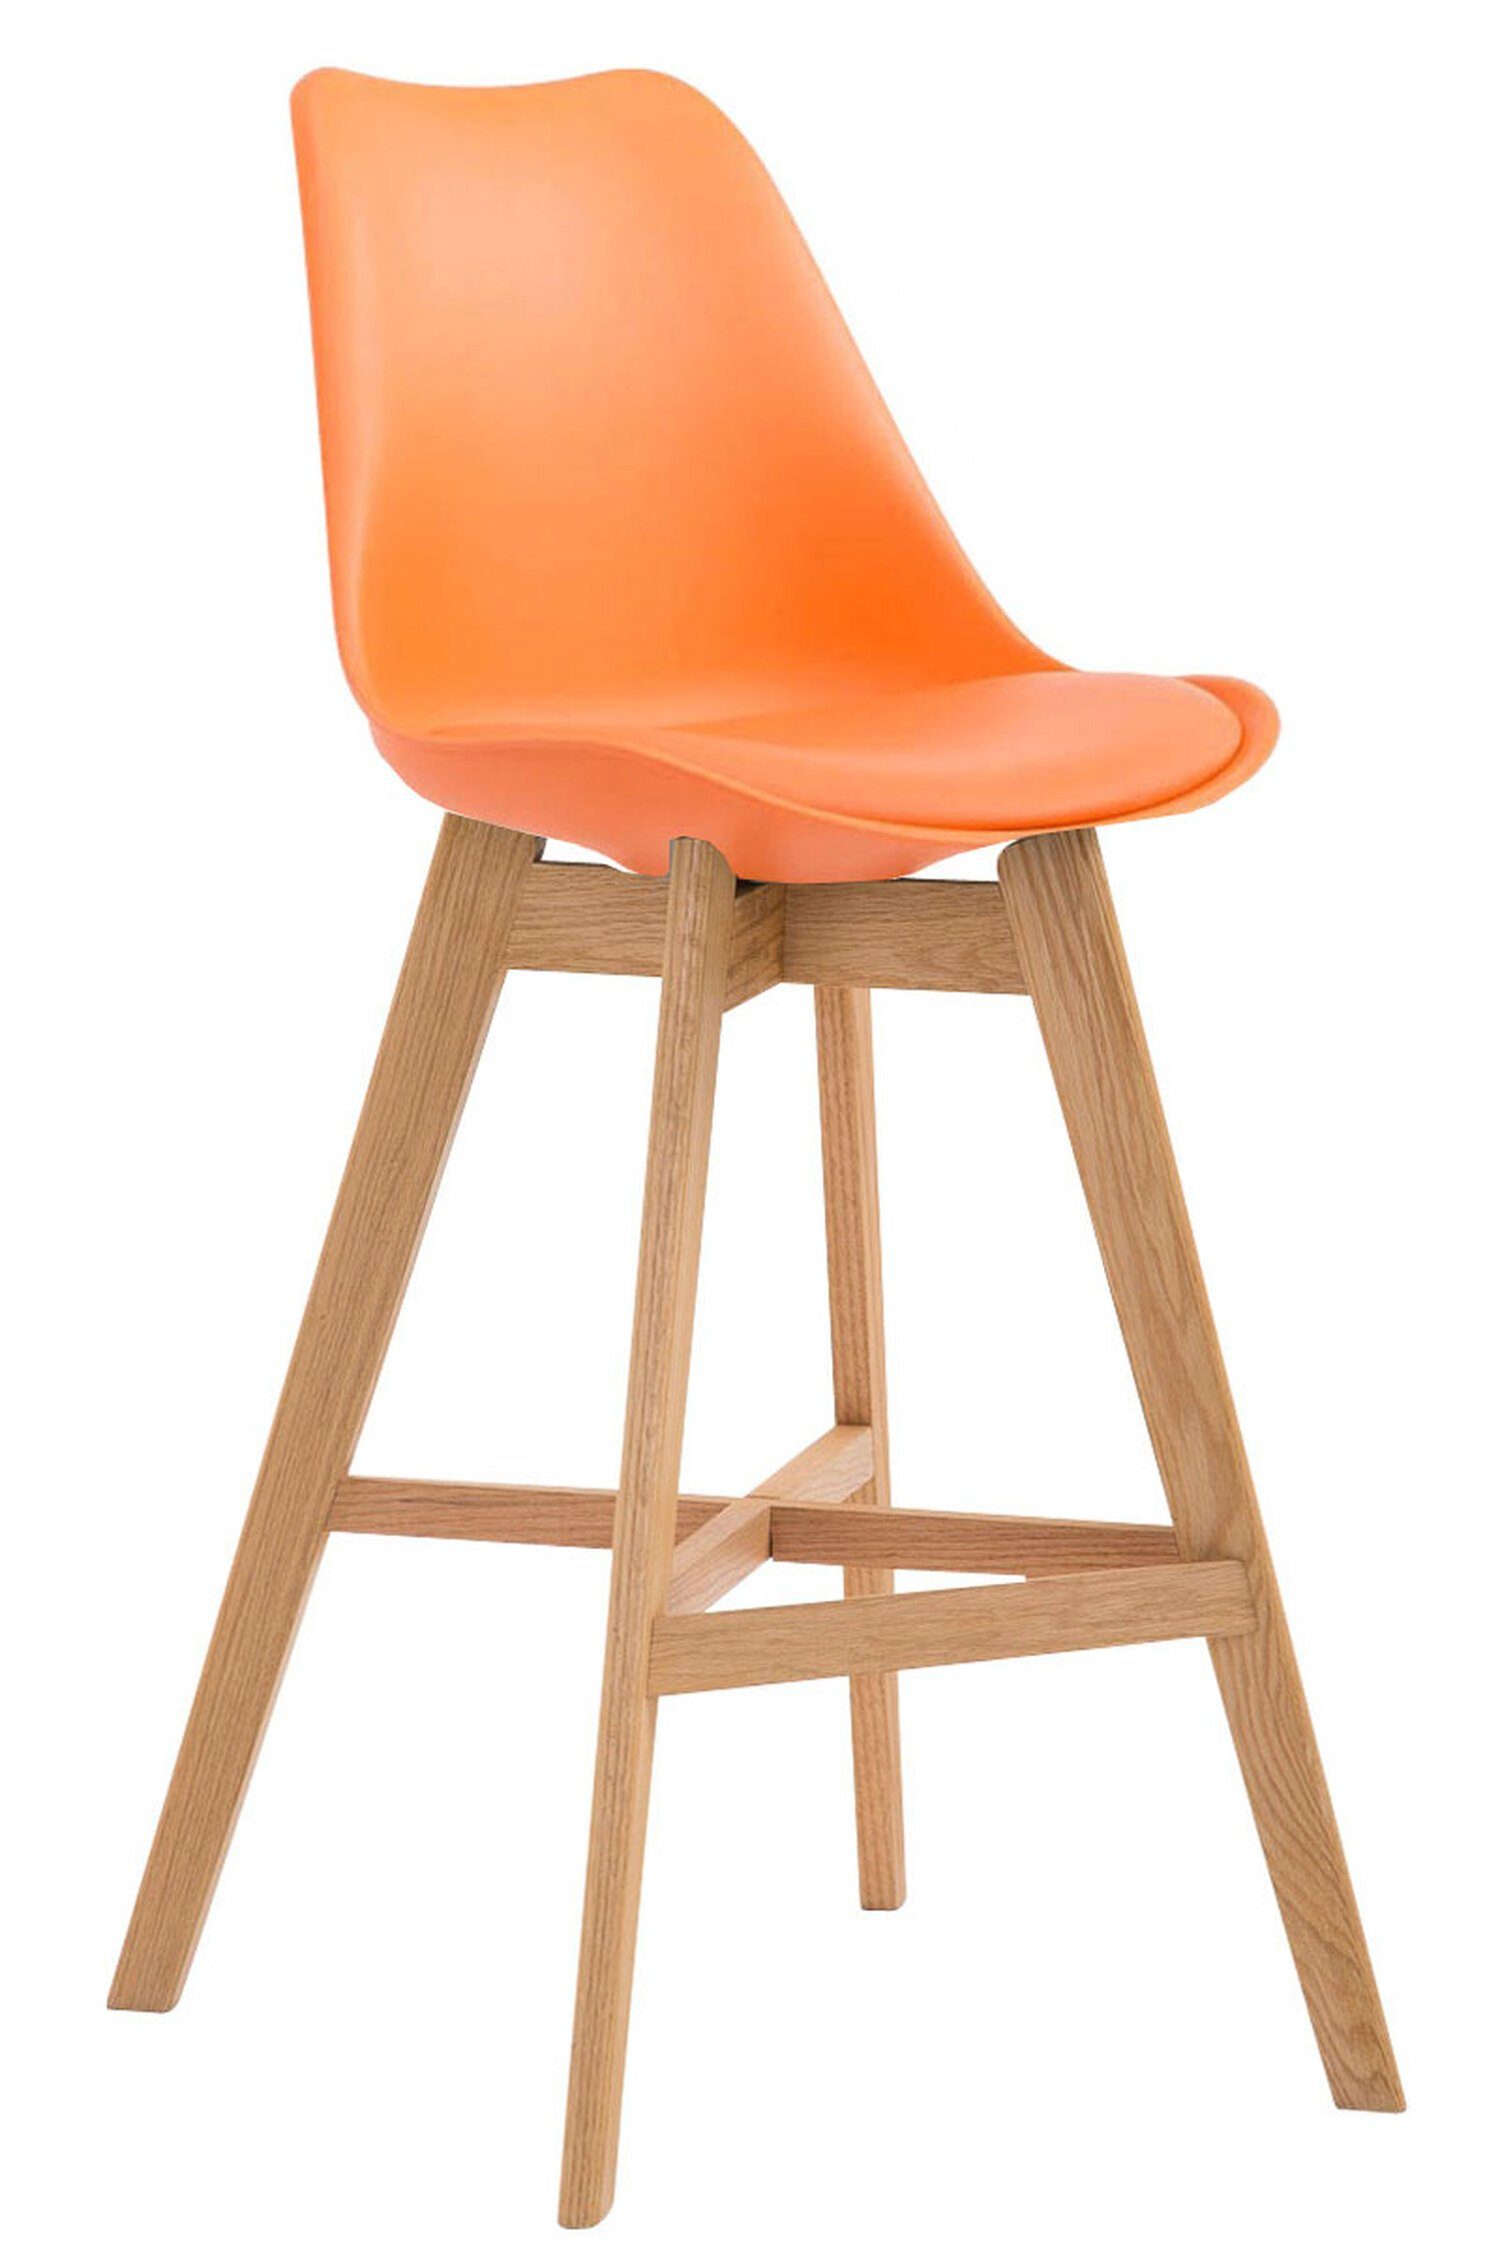 TPFLiving Barhocker Canada mit bequemer Rückenlehne und angenehmer Fußstütze (Barstuhl Hocker für Theke & Küche), 4-Fuß Gestell Holz natur - Sitzfläche: Kunstleder Orange